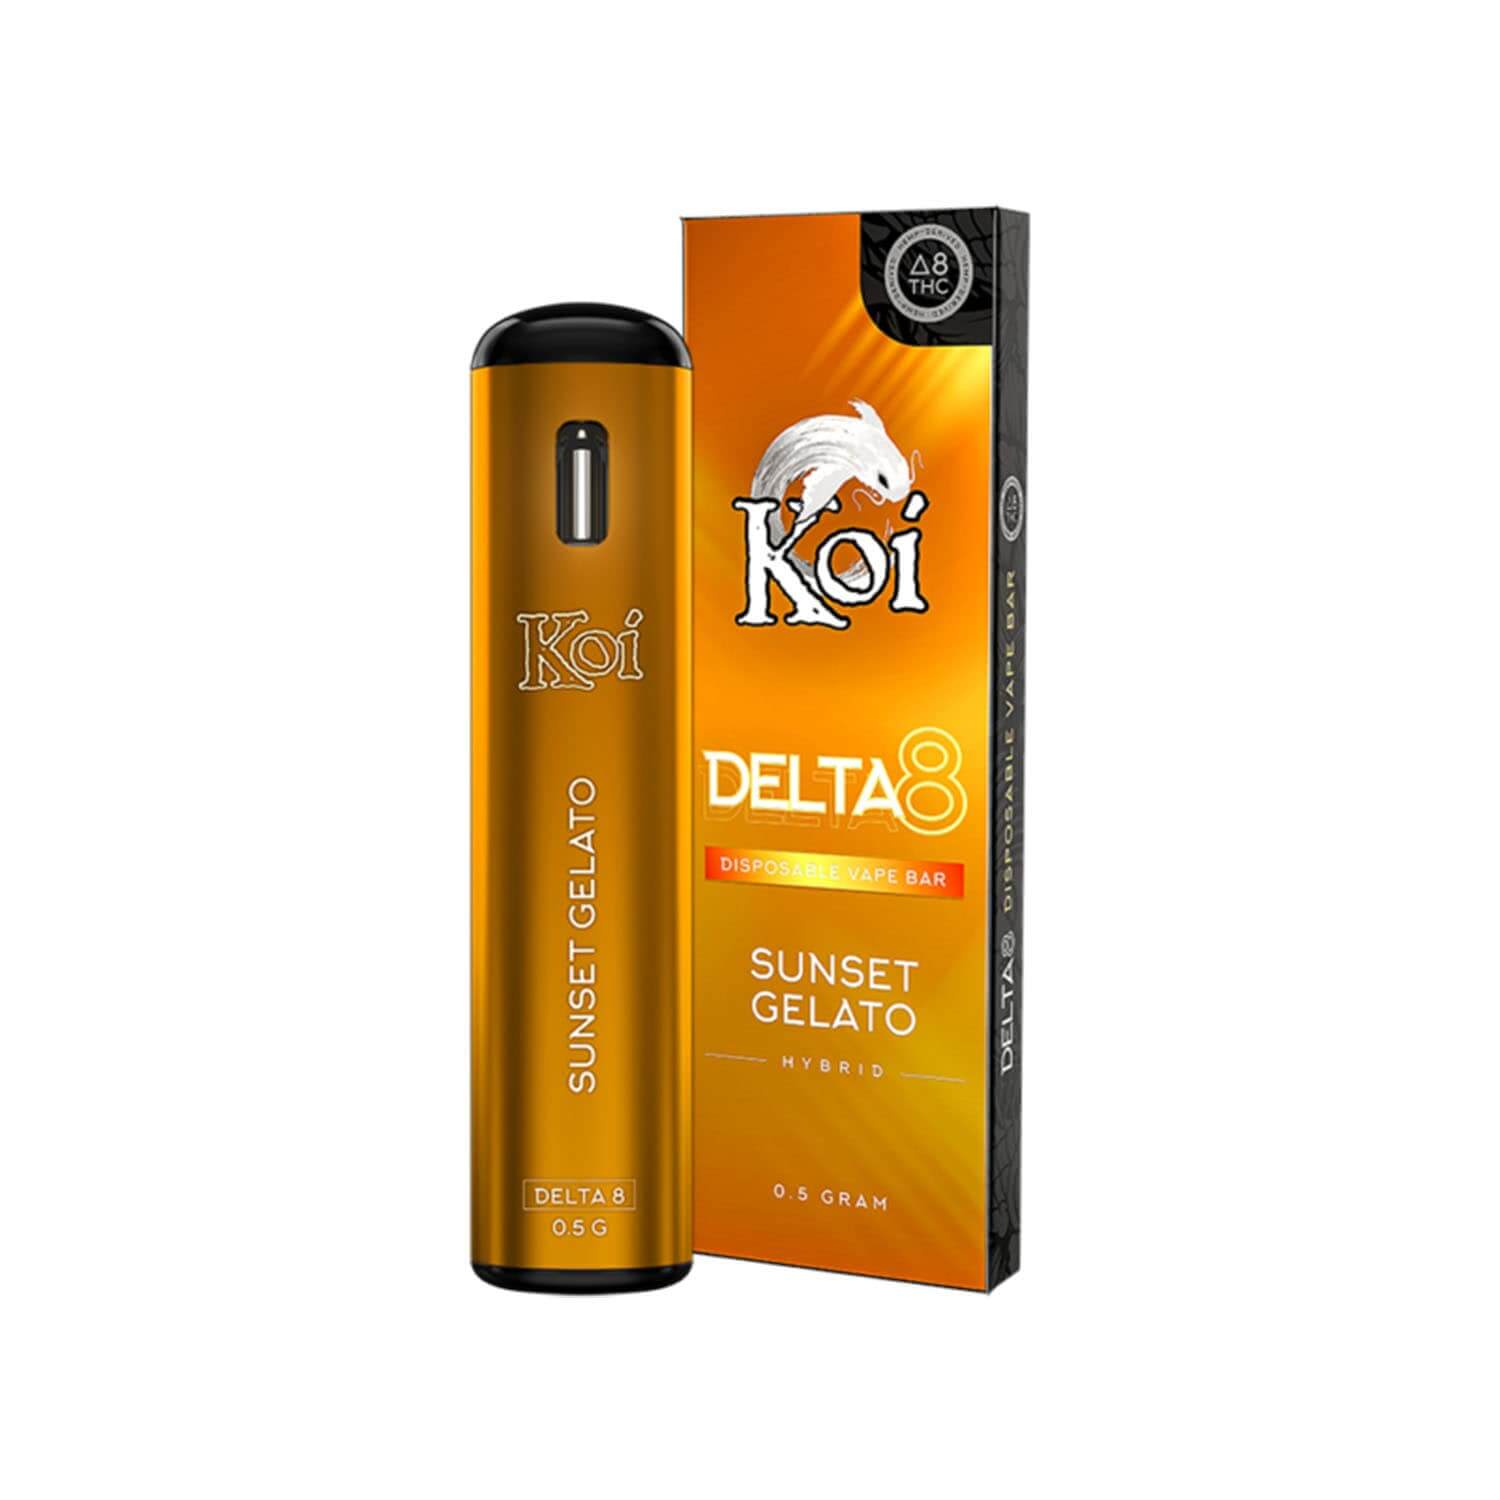 Koi Sunset Gelato Delta 8 Disposable Vape Bar (1g) Best Price